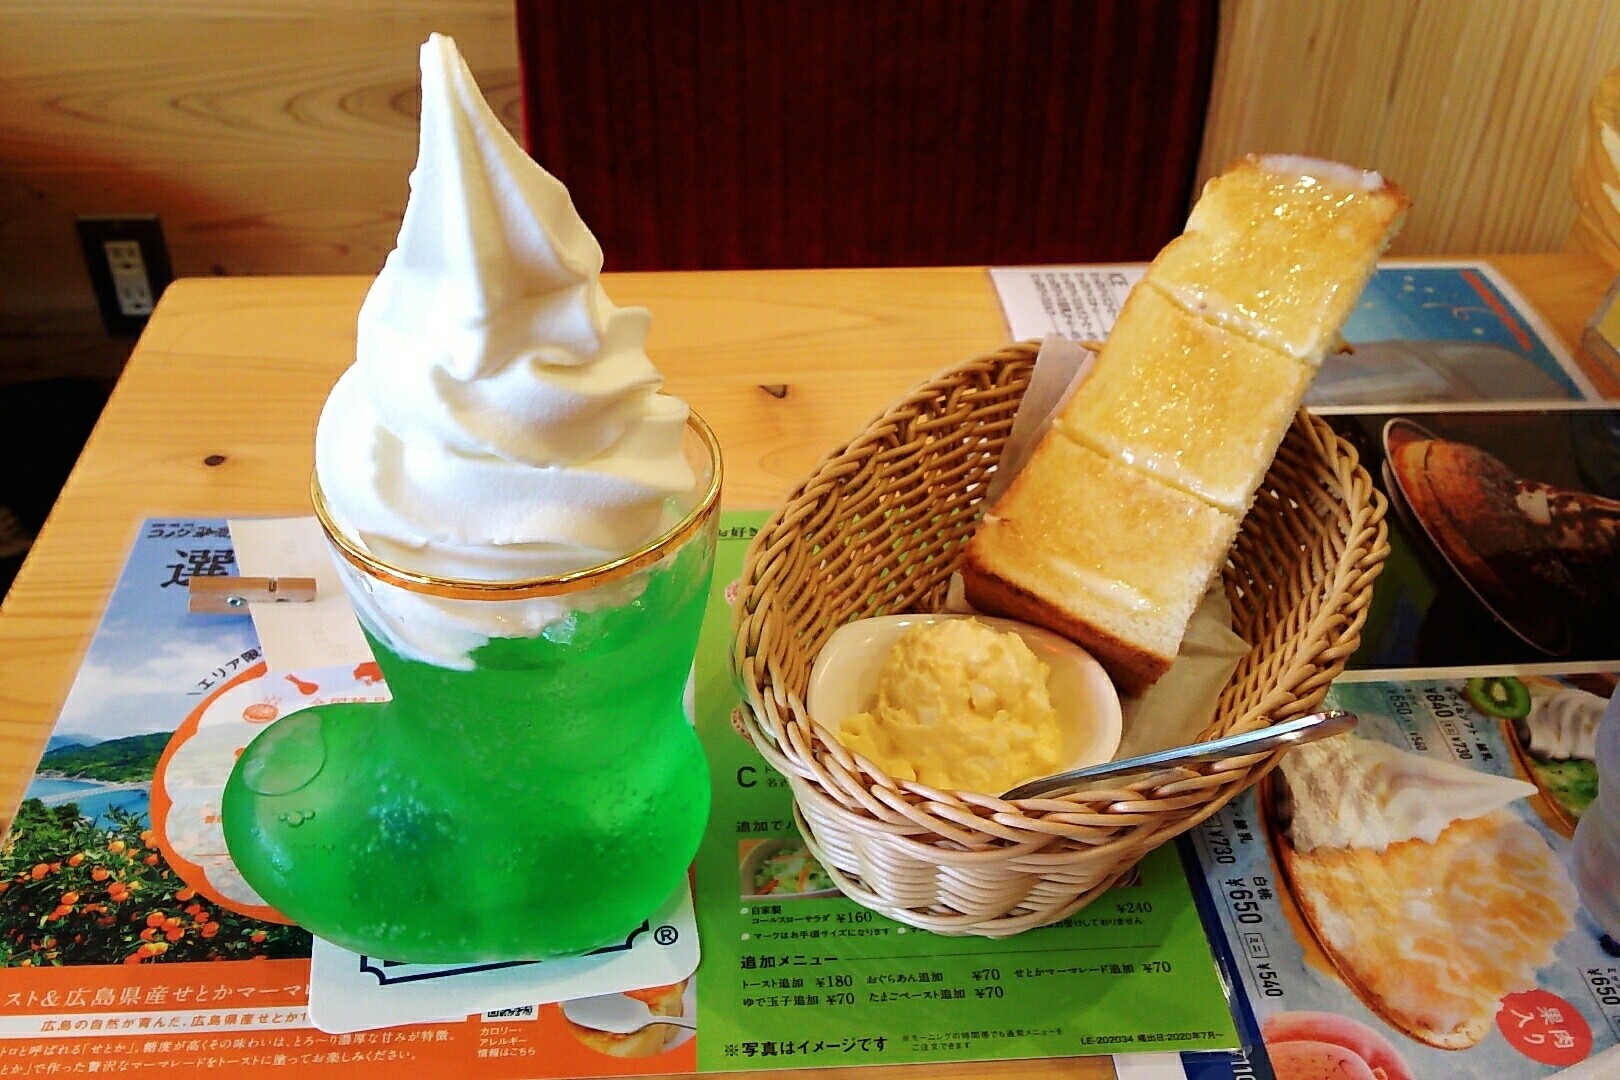 コメダ珈琲店 モーニング クリームソーダ かき氷 Nakacocoのおいしいものさがし